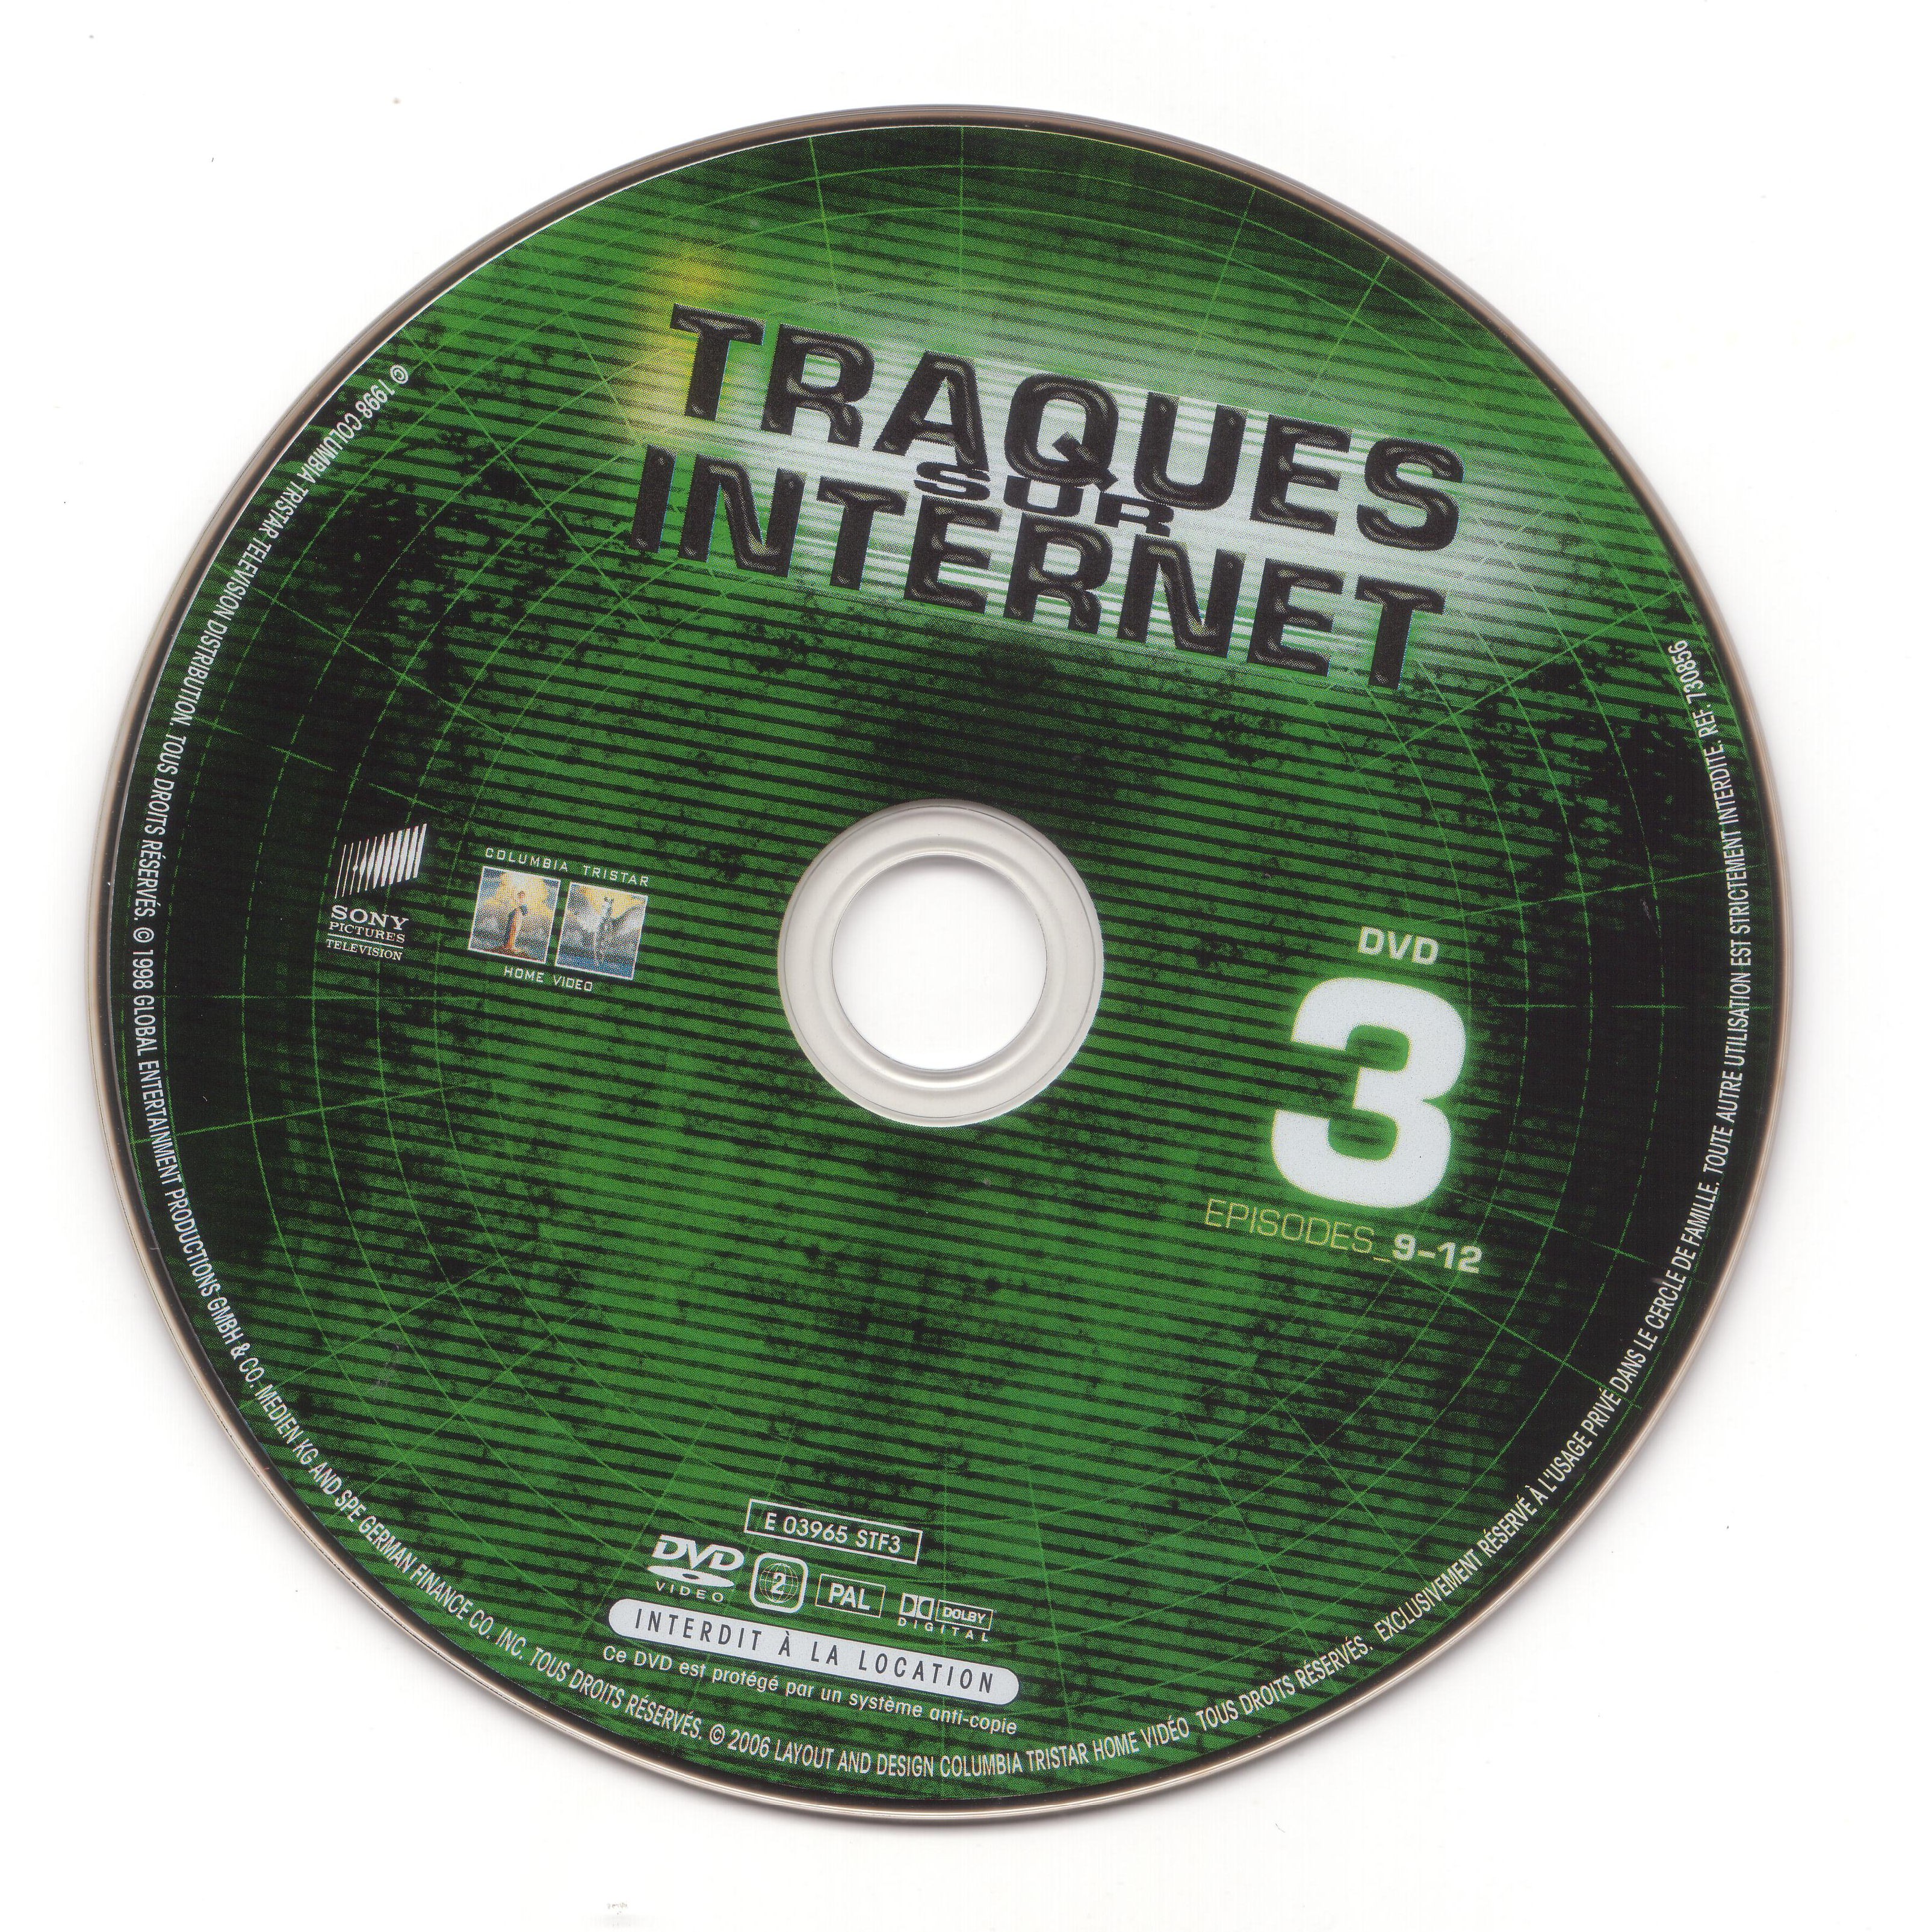 Traques sur internet disc 3